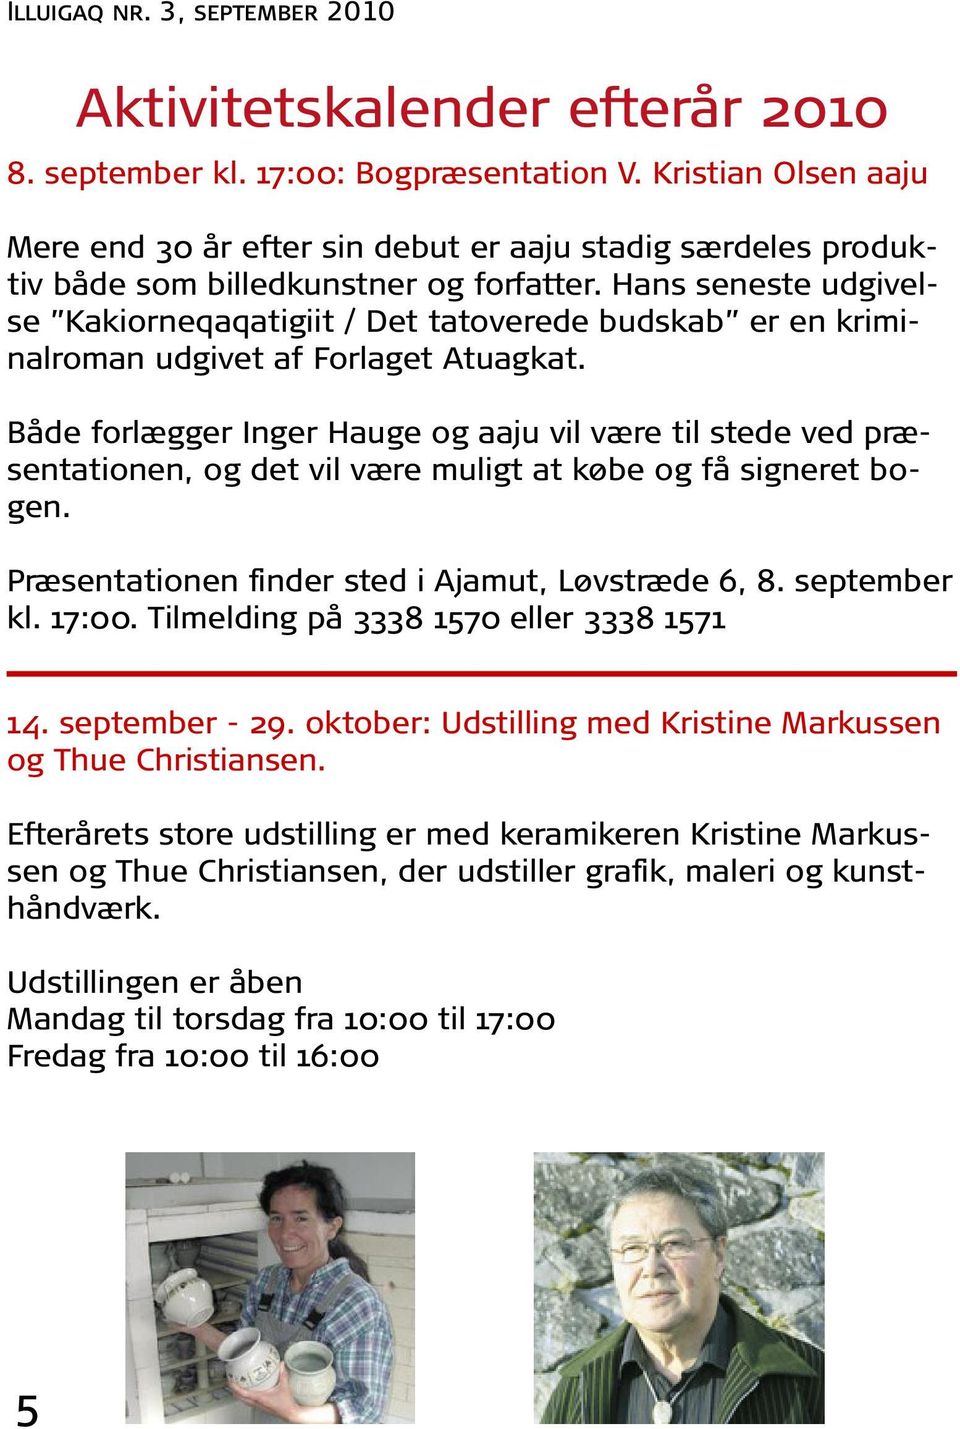 Både forlægger Inger Hauge og aaju vil være til stede ved præsentationen, og det vil være muligt at købe og få signeret bogen. Præsentationen finder sted i Ajamut, Løvstræde 6, 8. september kl. 17:00.